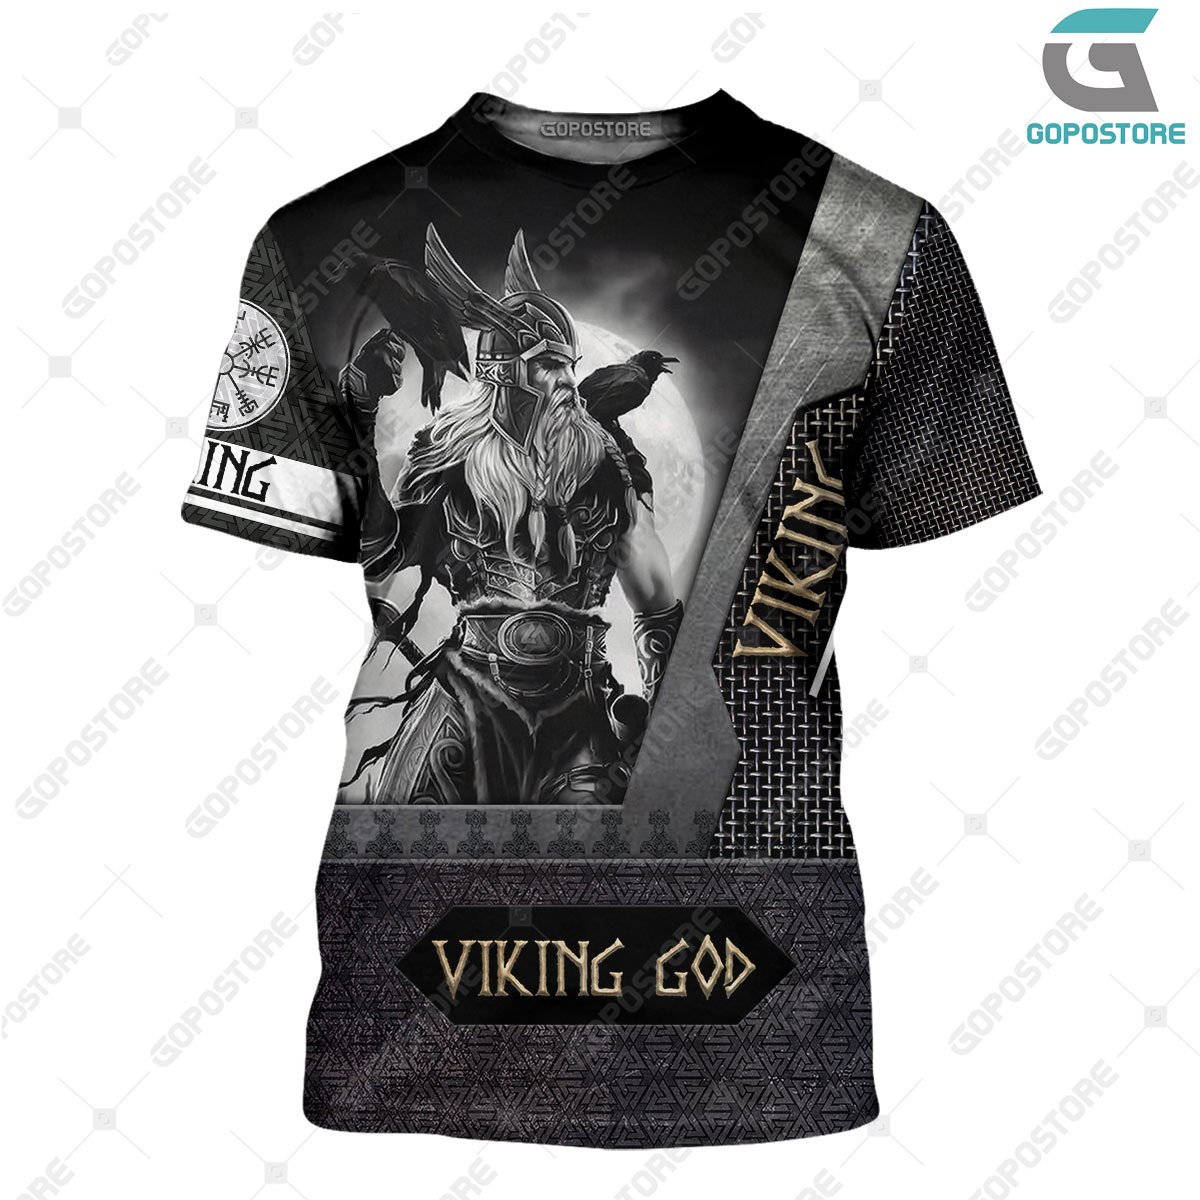 Viking god viking warrior full printing tshirt